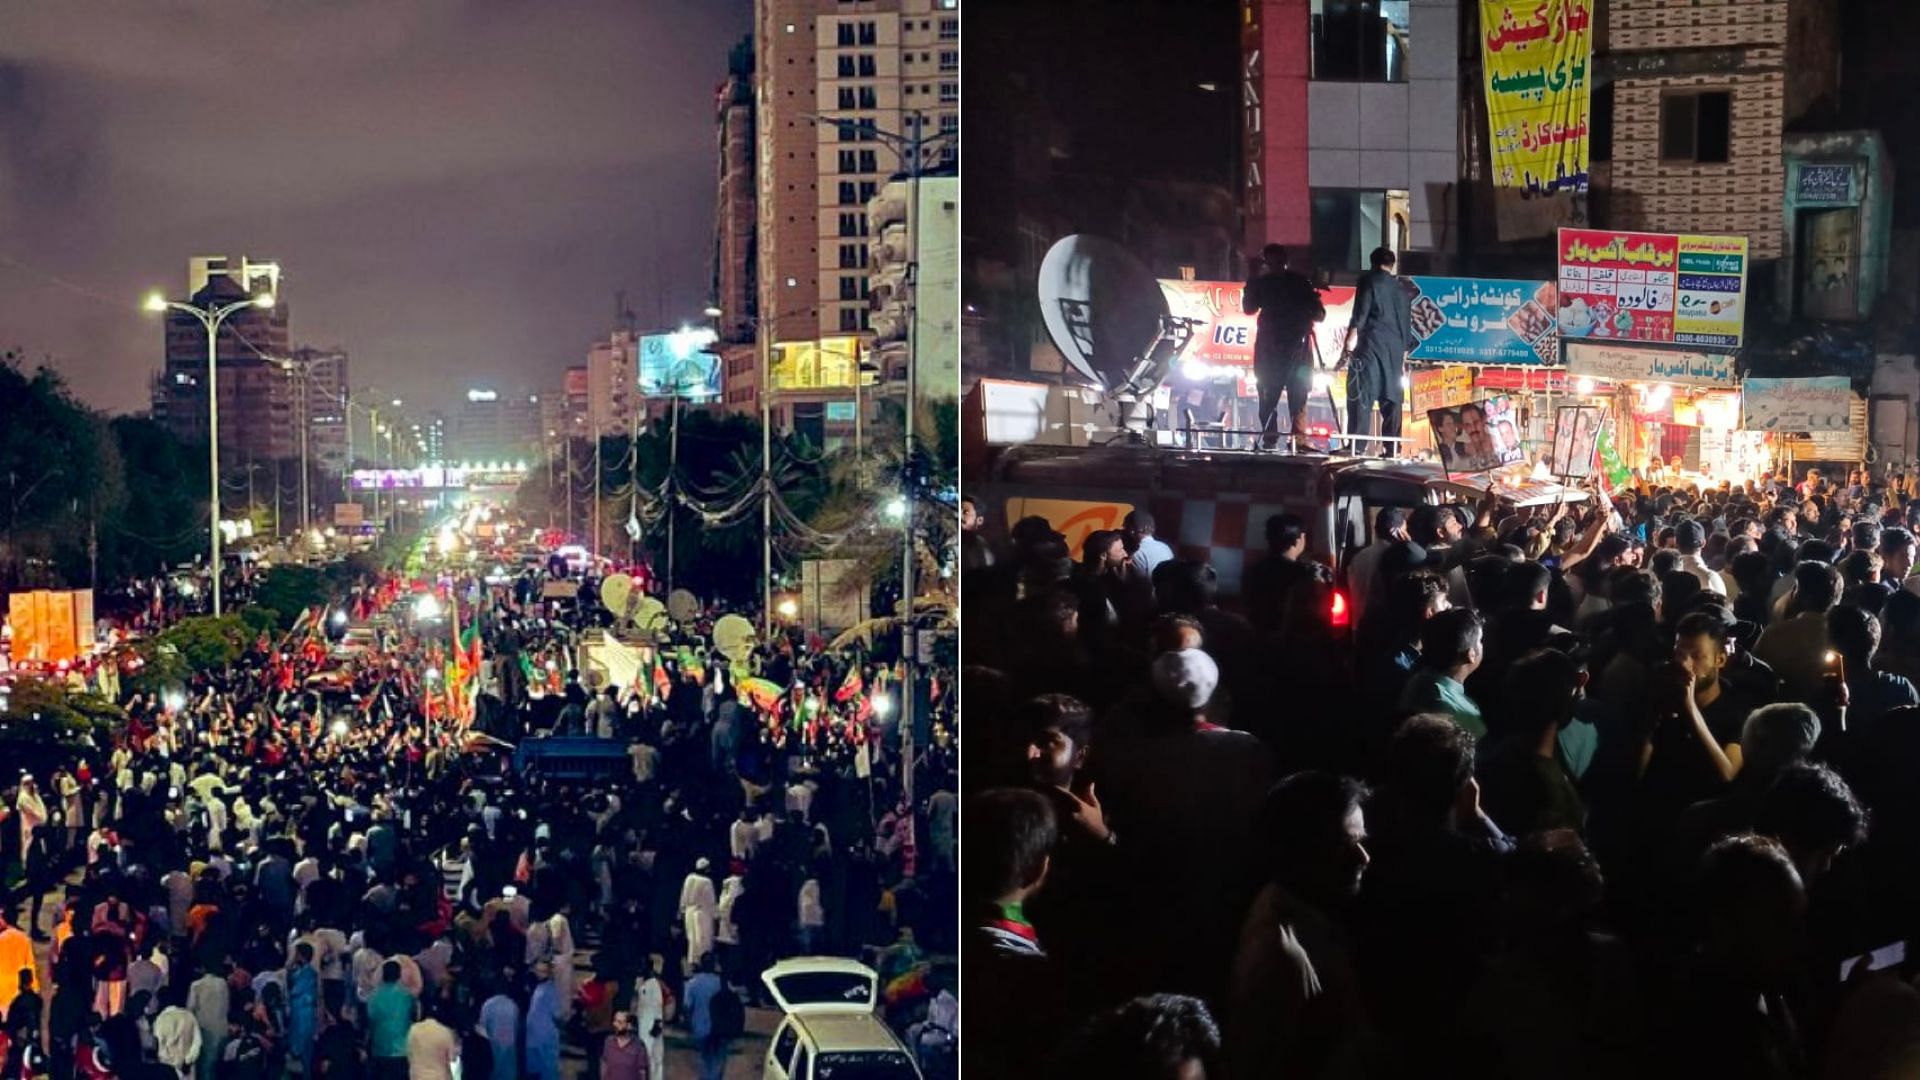 <div class="paragraphs"><p>Protest against Hamza Shehbaz's re-election in Karachi and Faislabad, Pakistan.</p></div>